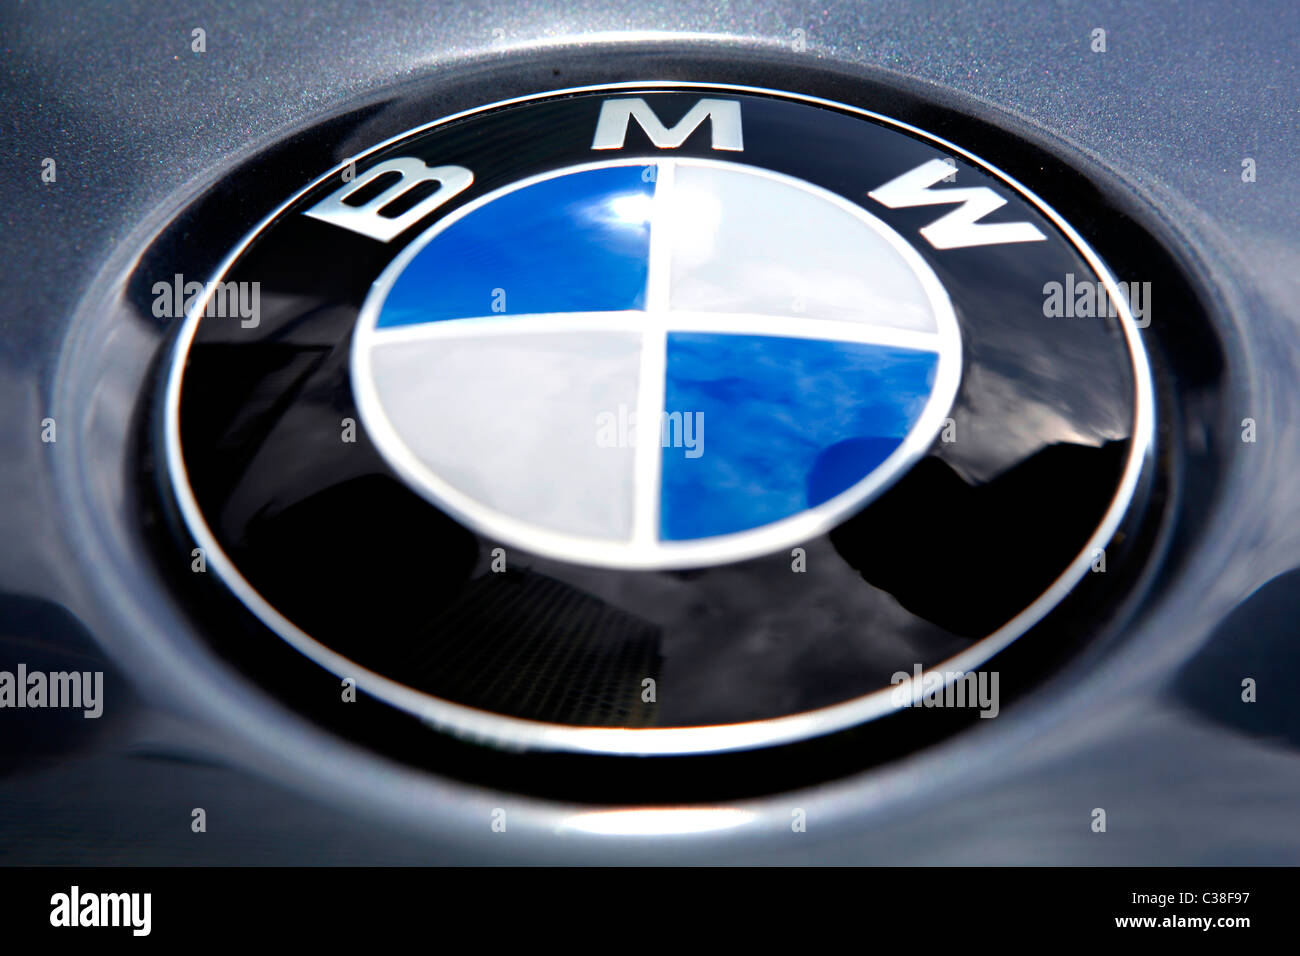 La imagen muestra una insignia BMW altamente pulido Fotografía de